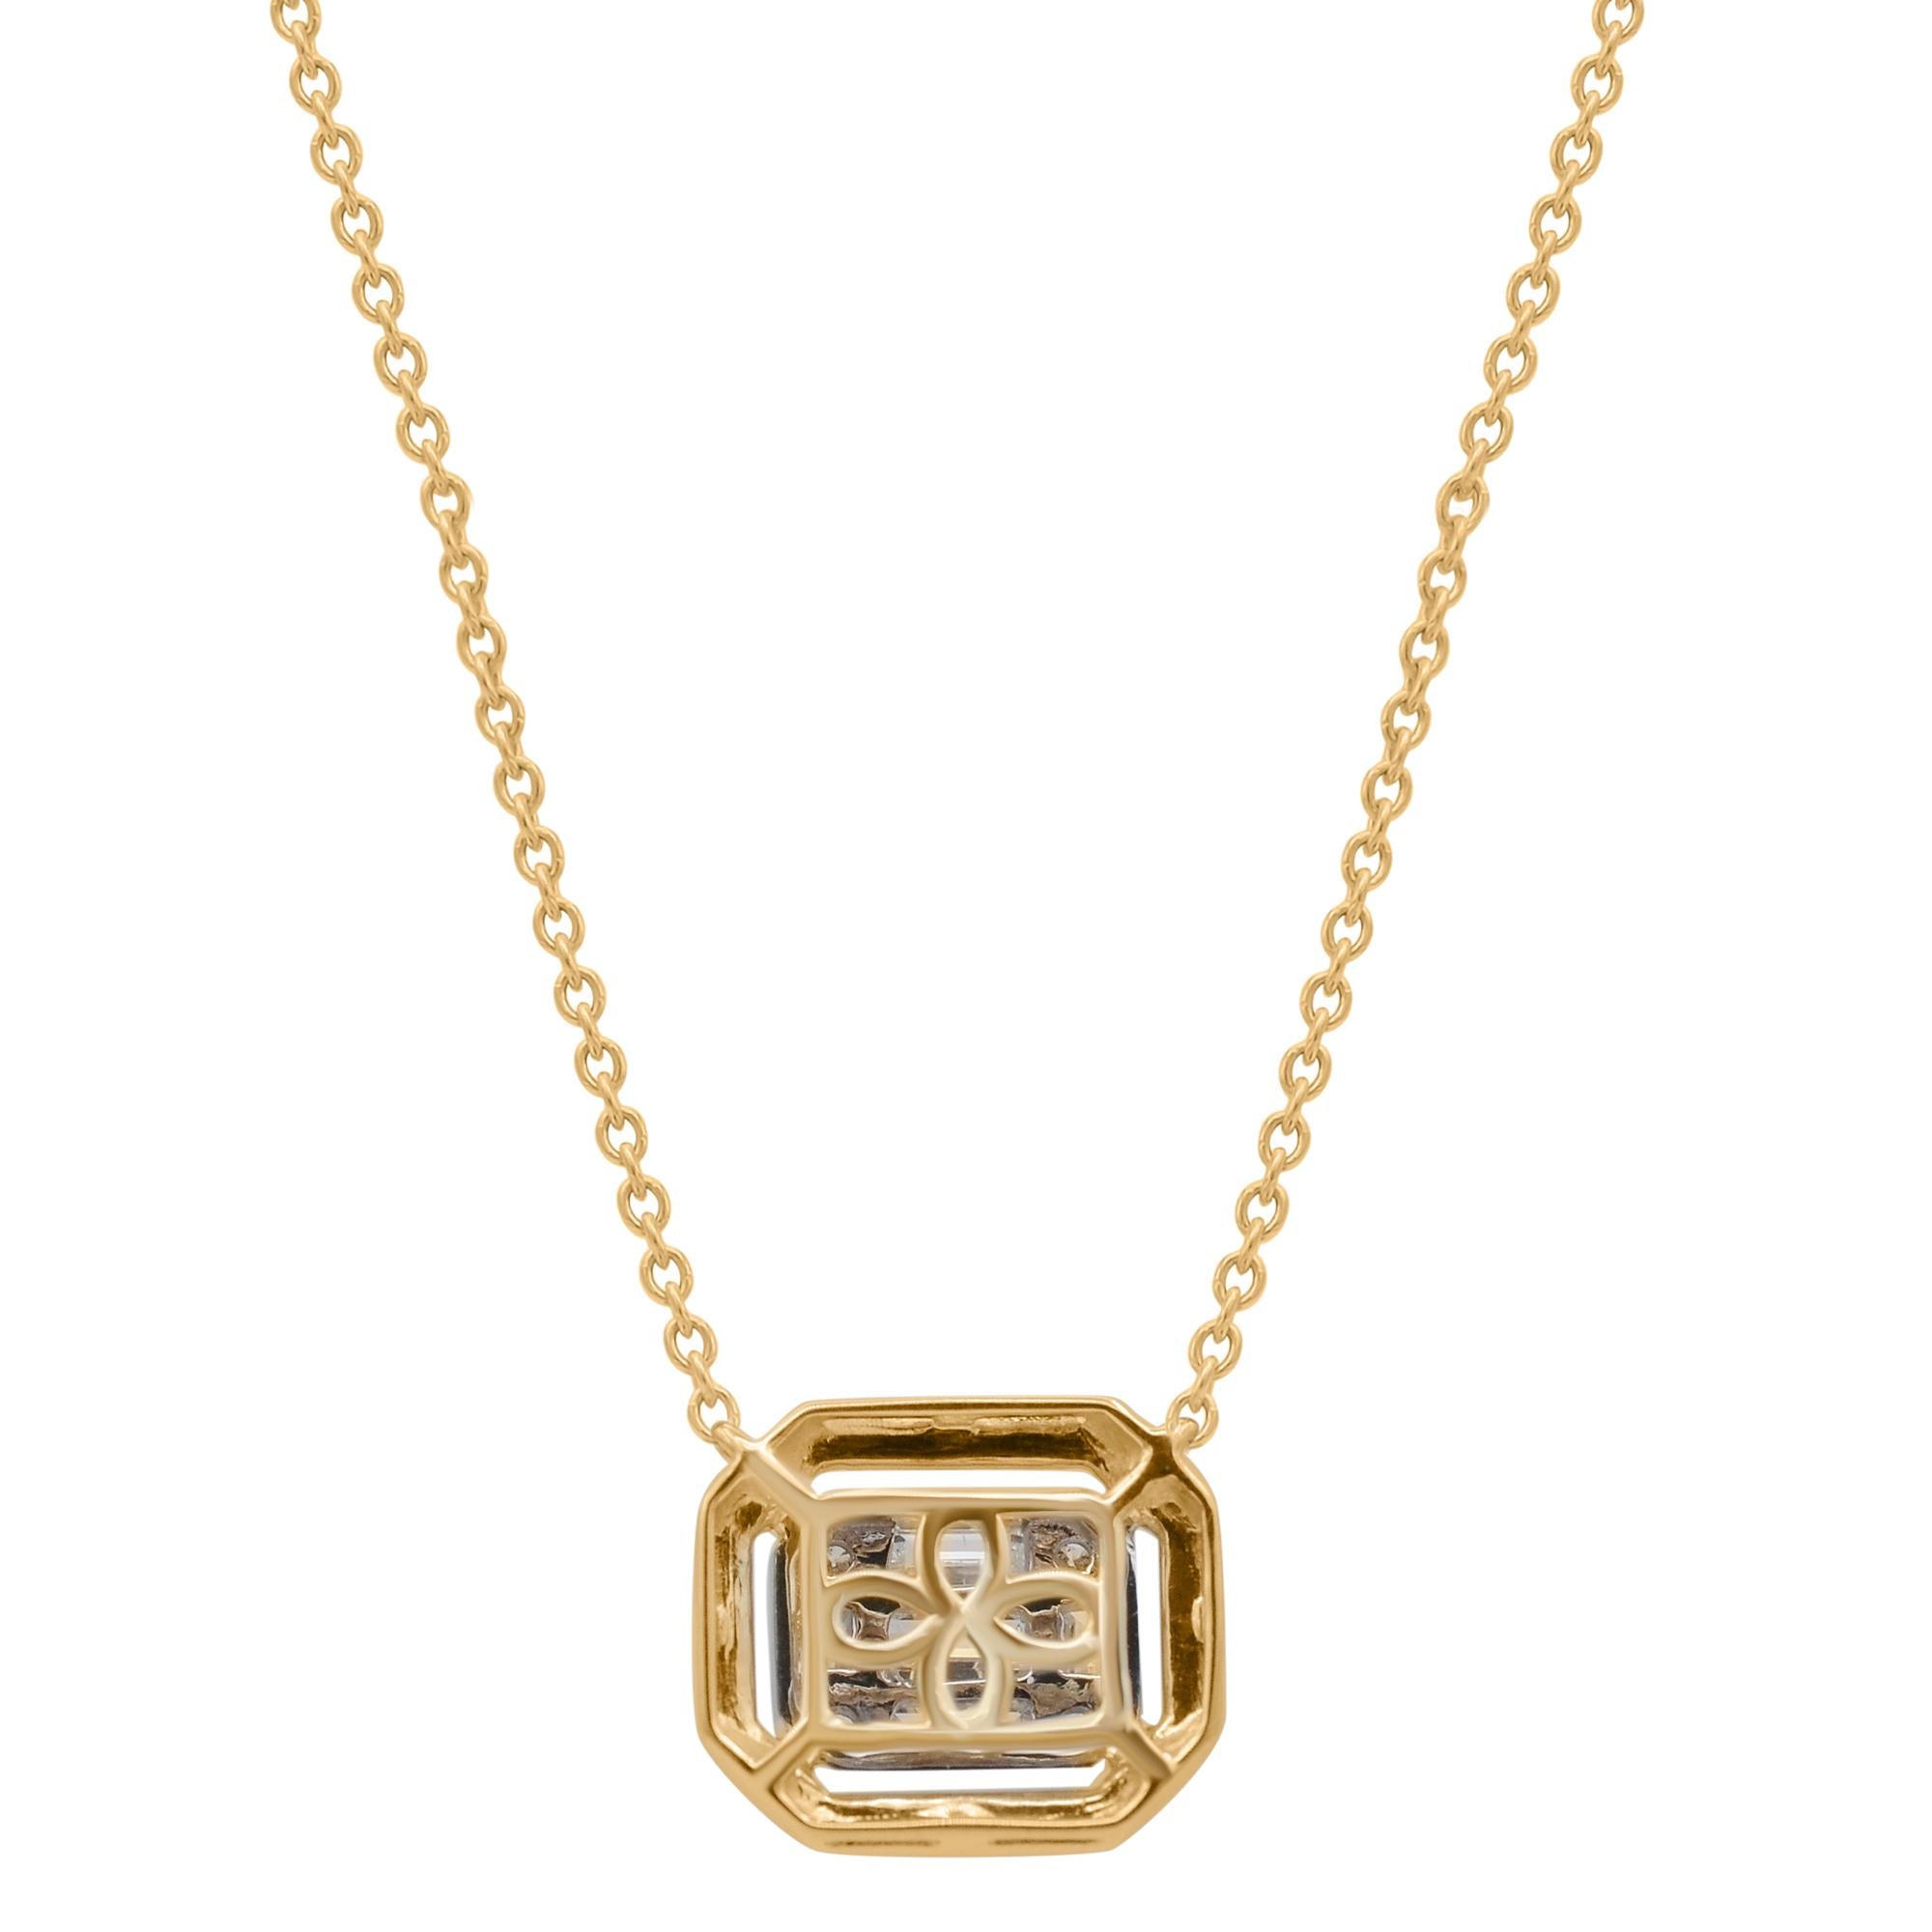 Contemporary TJD 0.50 Carat Baguette & Brilliant Cut Diamond 18K Yellow Gold Pendant Necklace For Sale